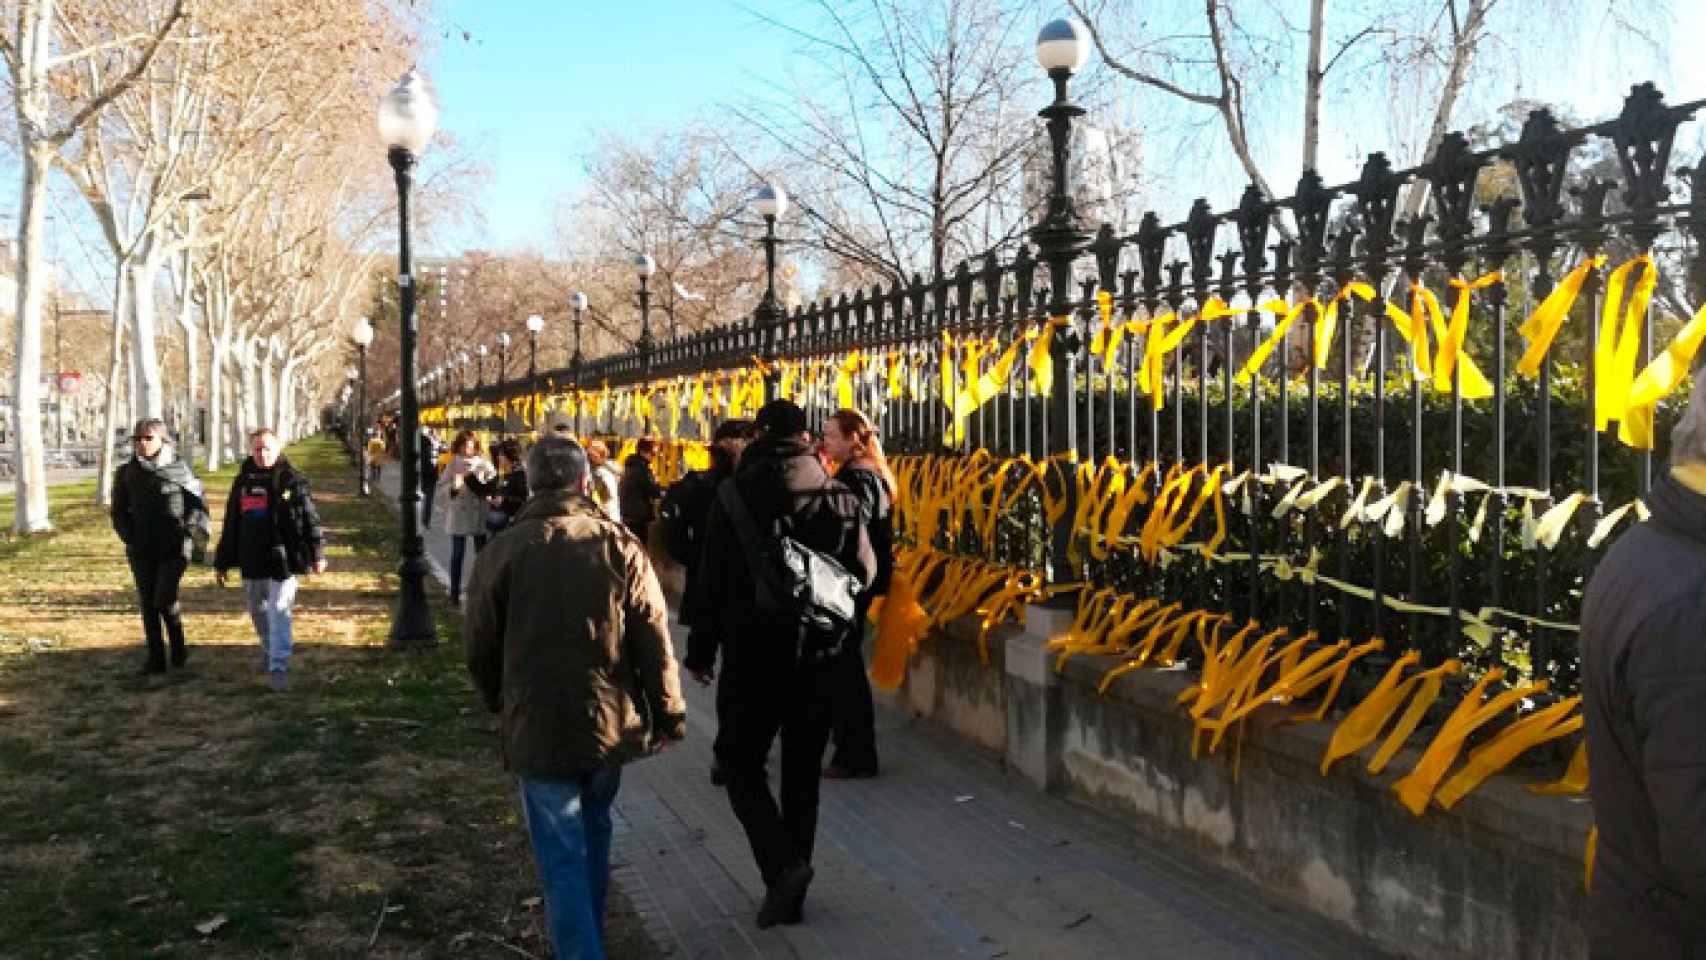 Lazos amarillos en el Parque de la Ciutadella de Barcelona, donde una mujer fue agredida el sábado / CG